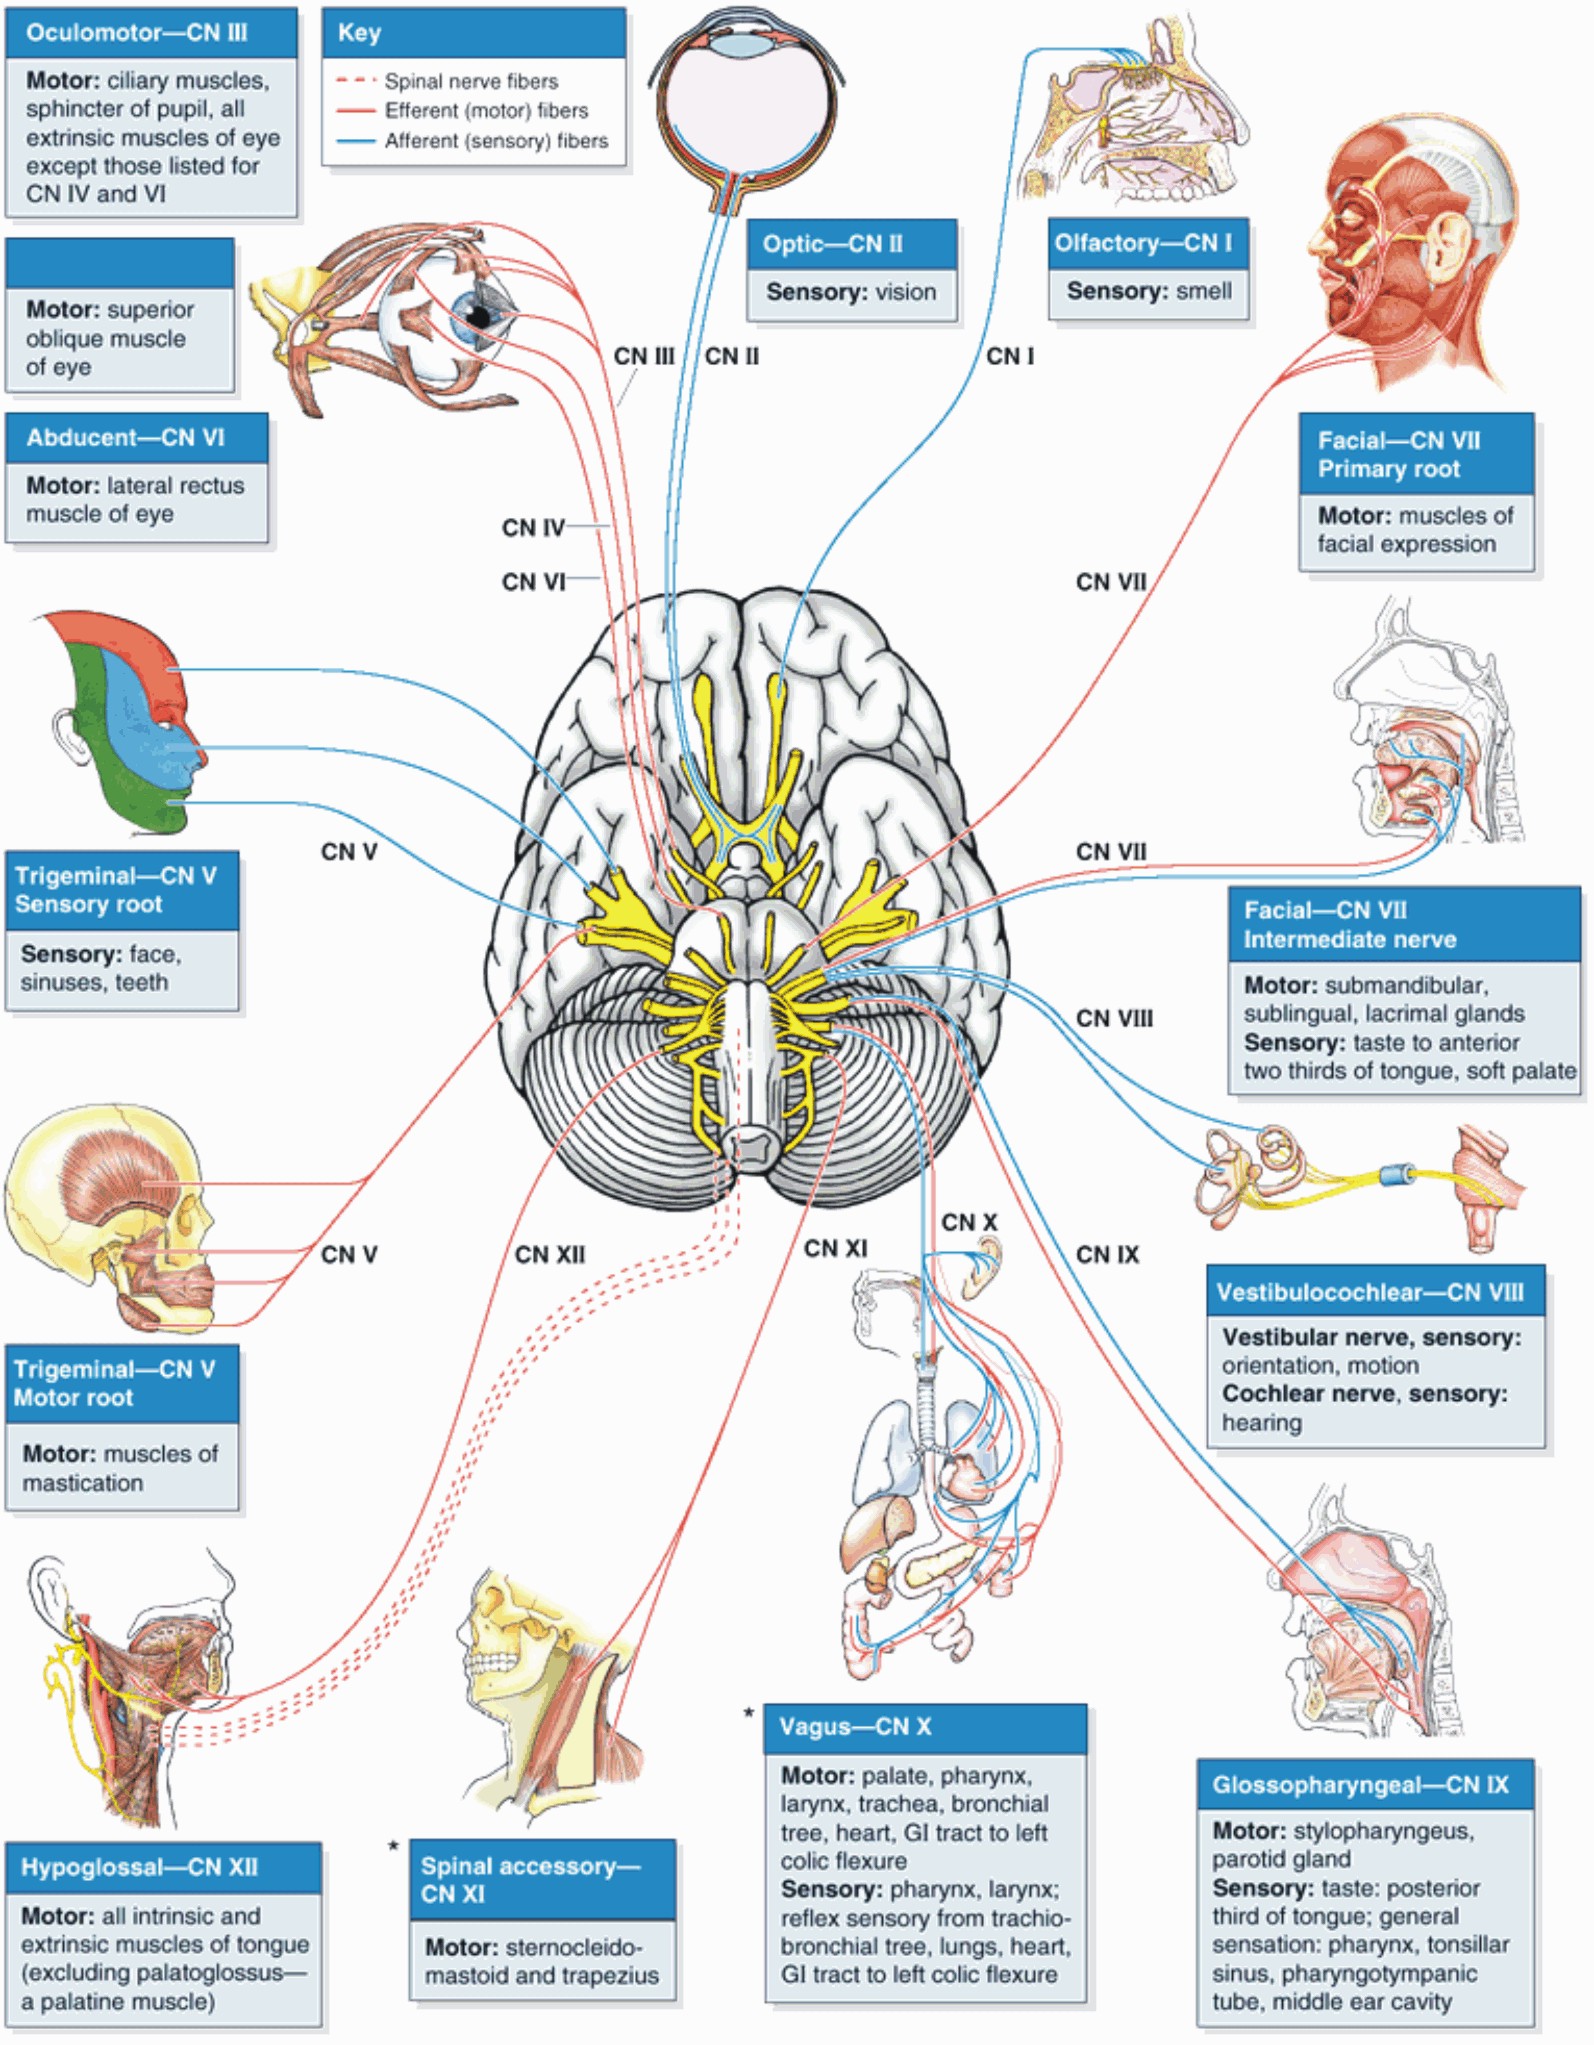 Иннервация черепно мозговых нервов. Головной мозг и Черепные нервы анатомия. Черепно-мозговые нервы 12 пар. Пары черепно мозговых нервов анатомия. 12 Пар черепных нервов анатомия схема.